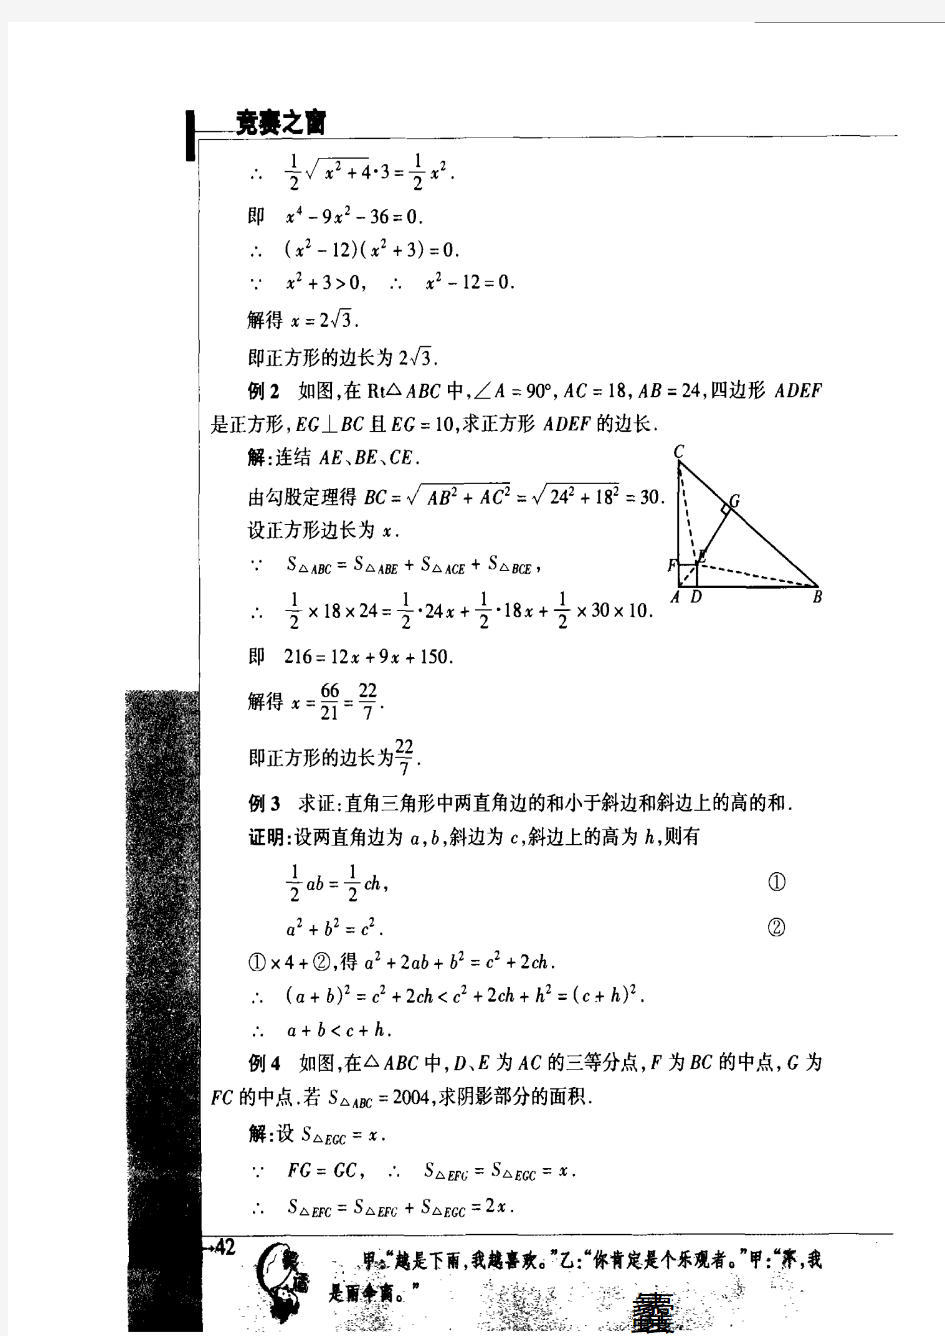 初中数学竞赛专题讲座(五)——面积法解几何题